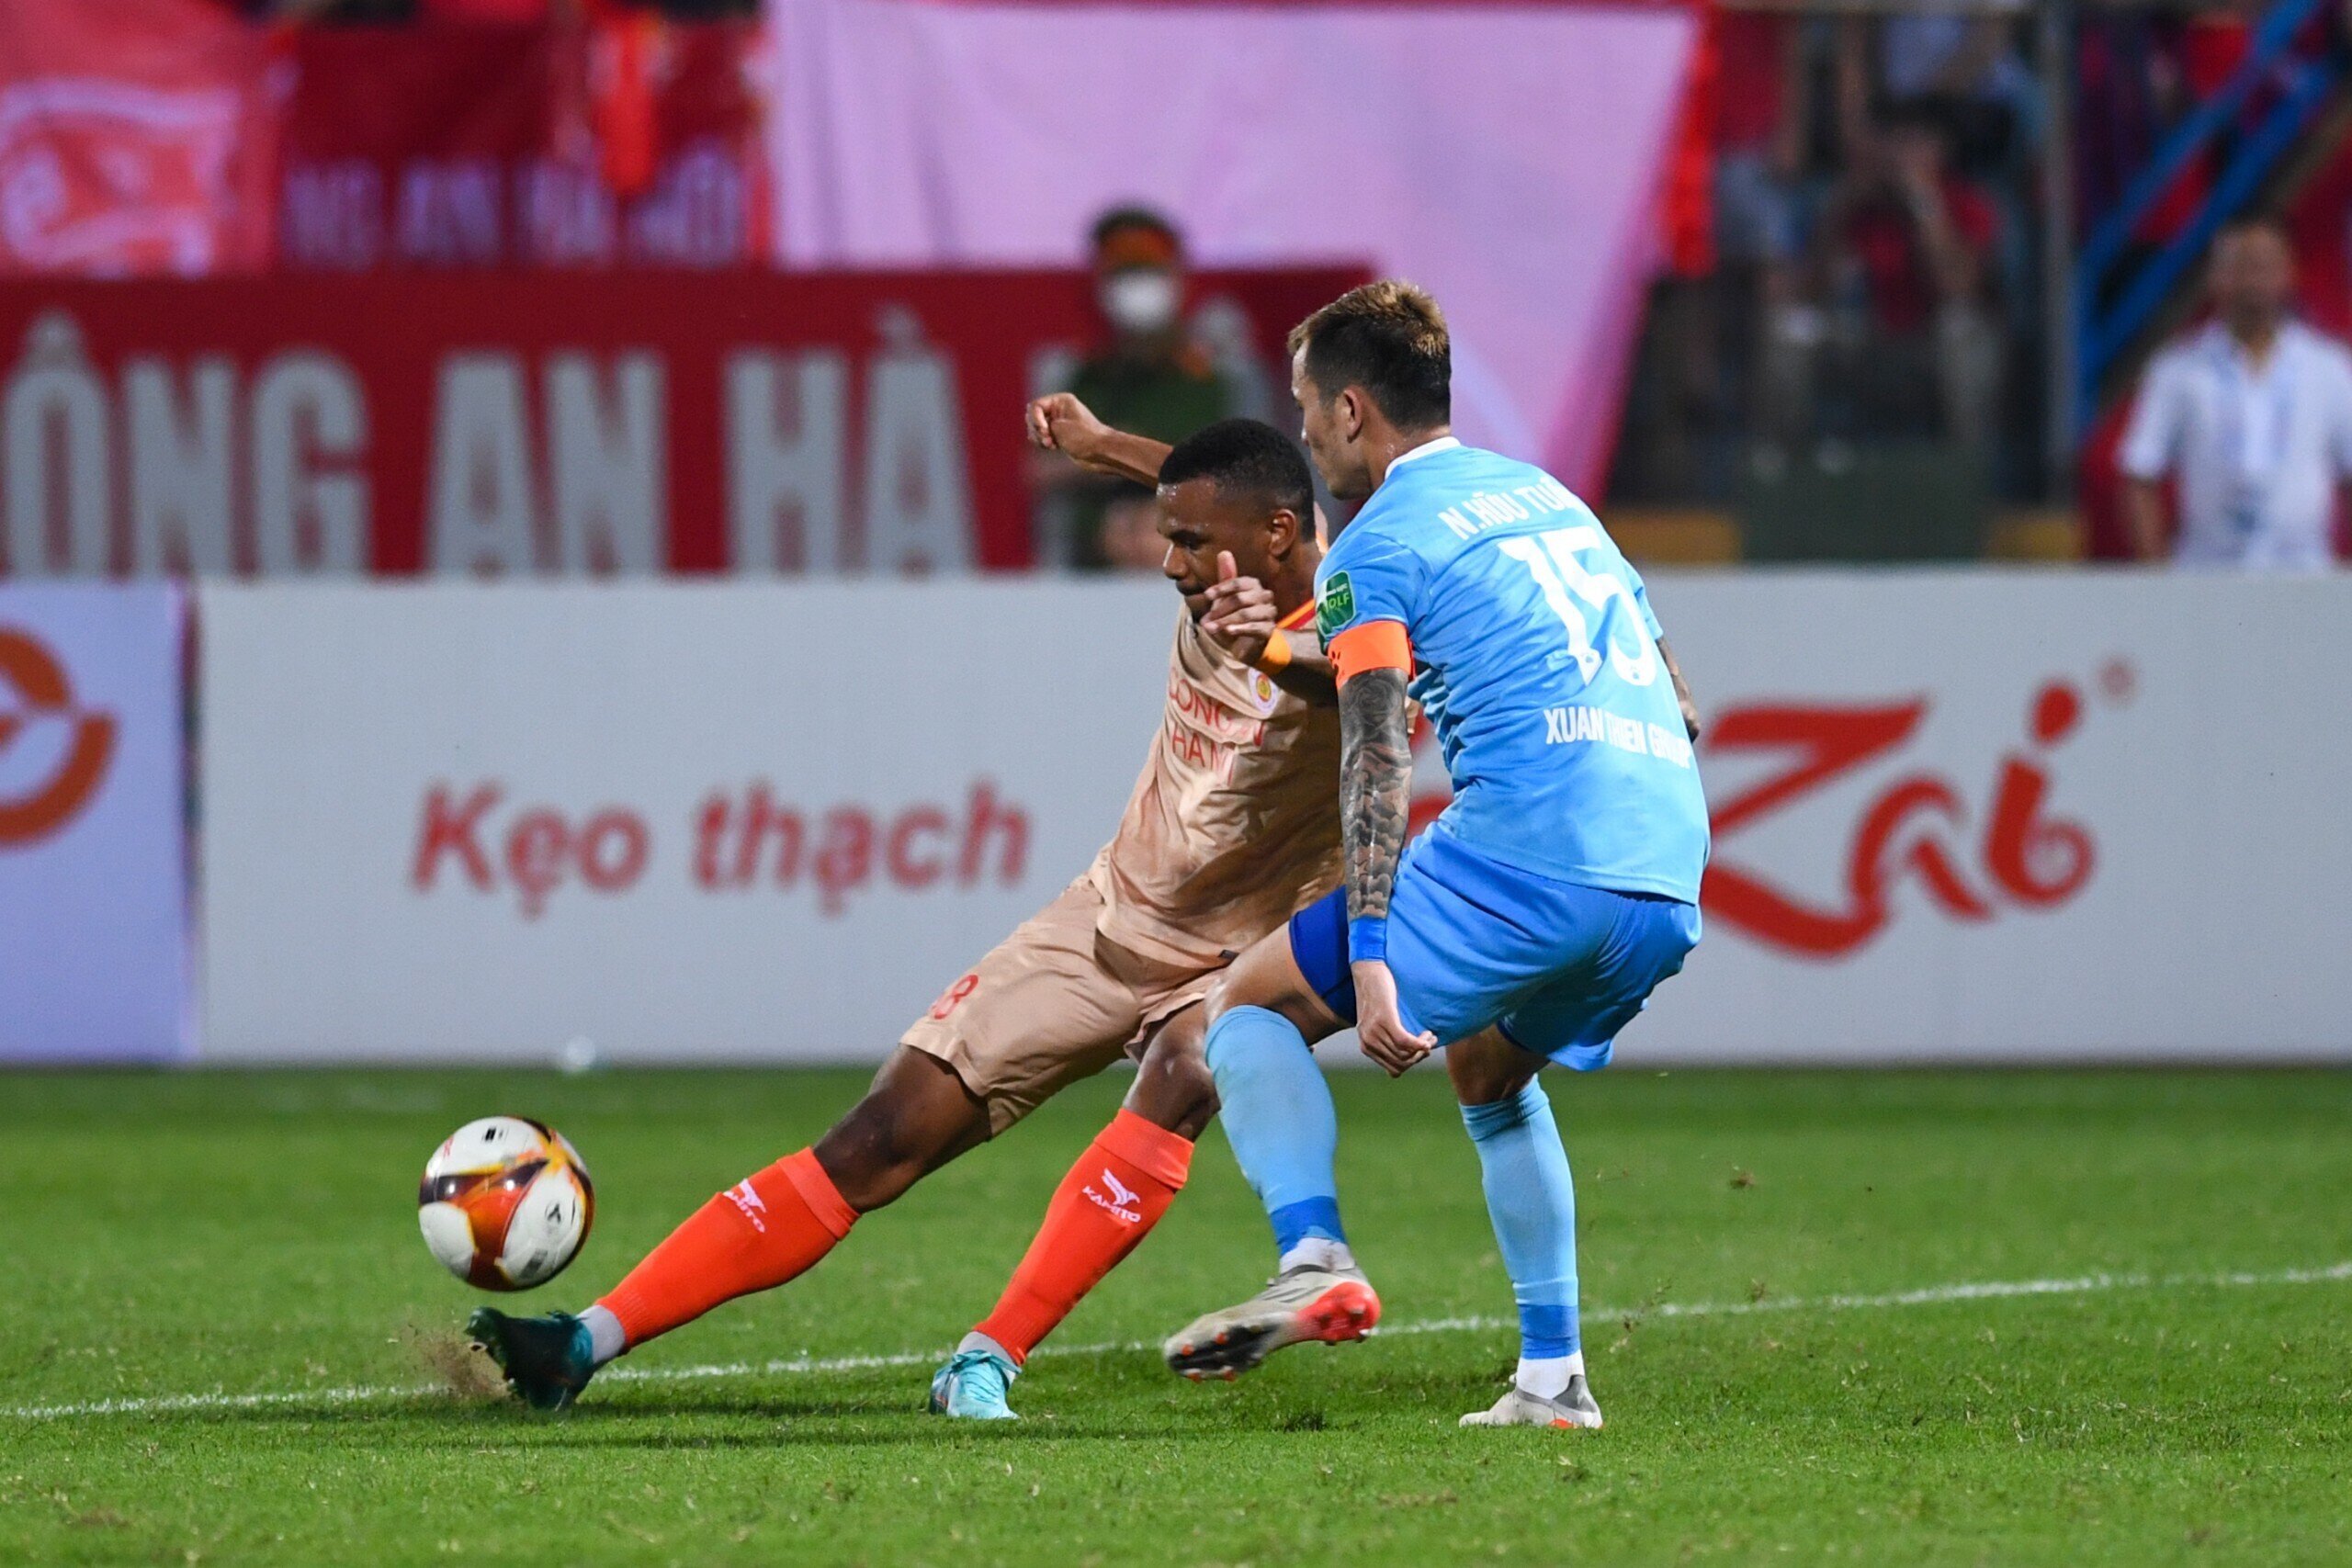 Trực tiếp bóng đá CLB Công an Hà Nội 3-0 Nam Định: Jhon Cley ghi bàn - Ảnh 1.